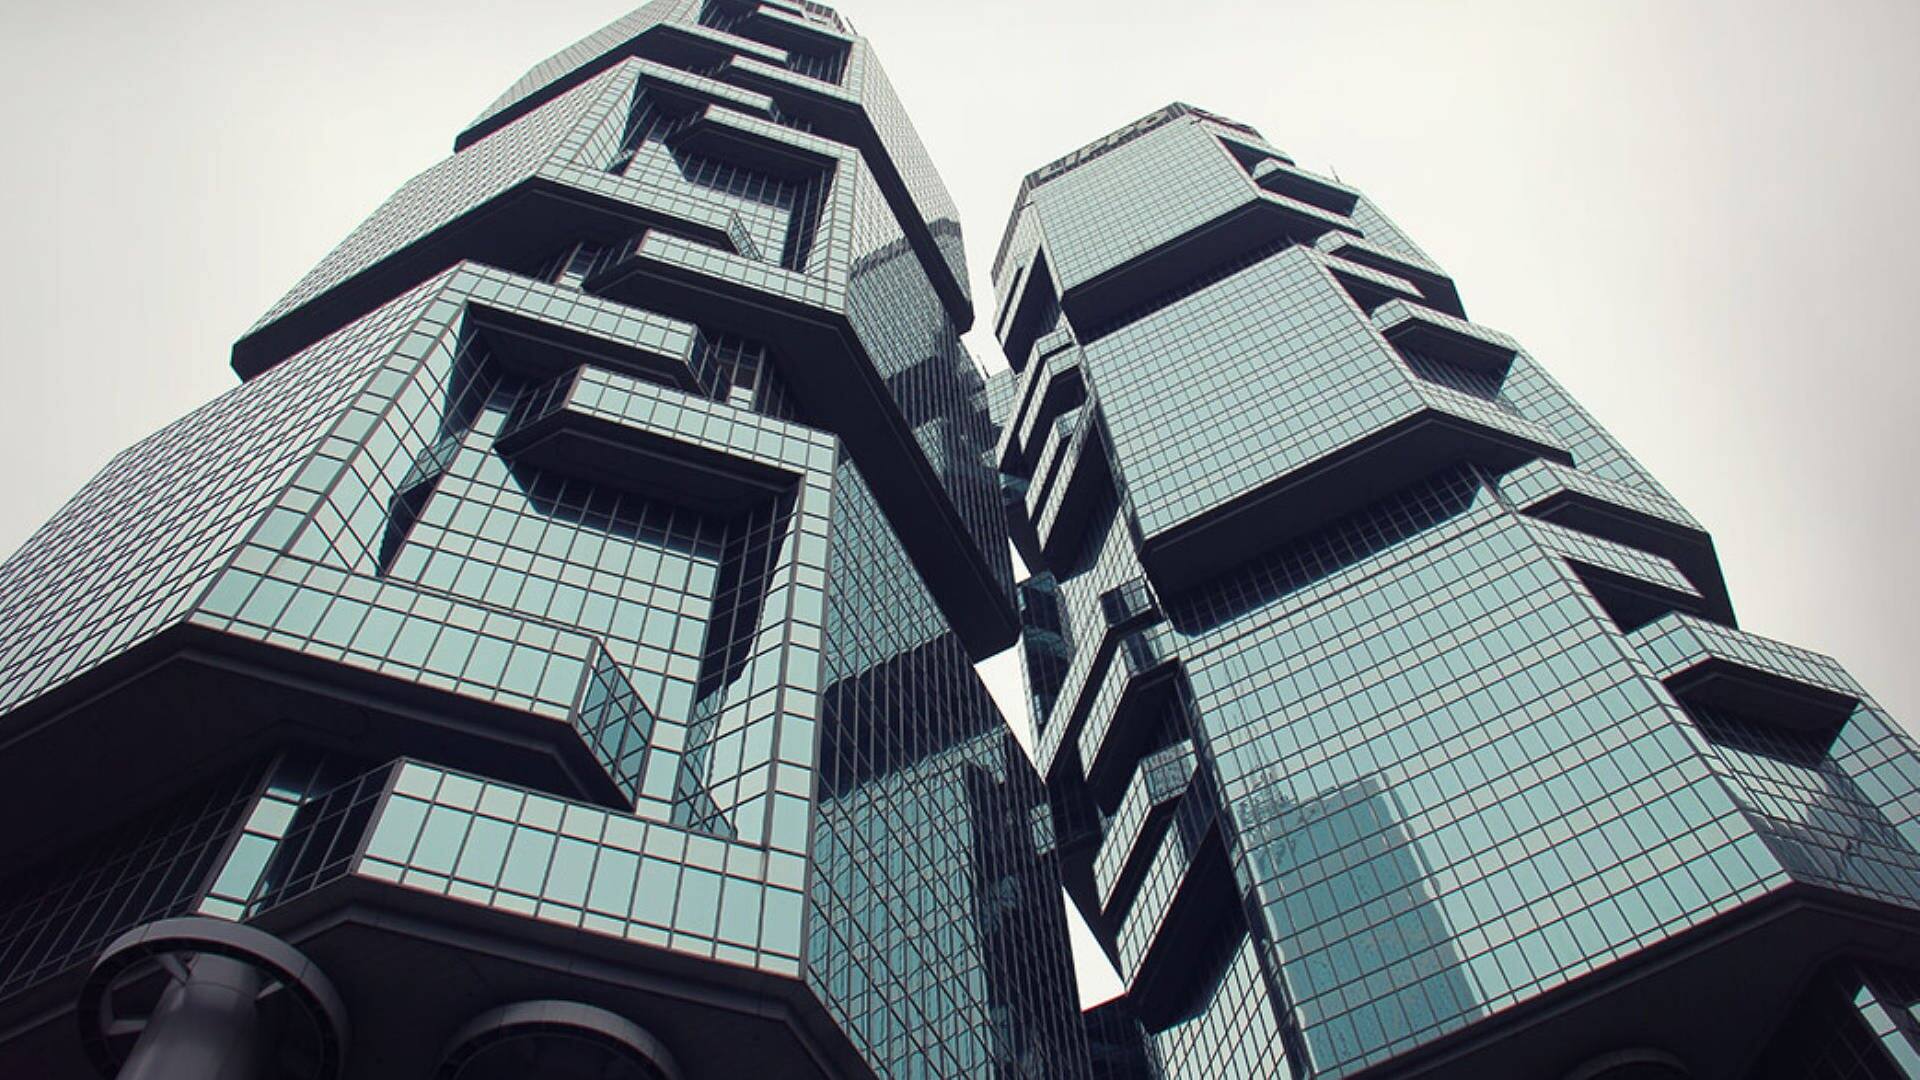 Hongkong: die Stadt (Foto: SWR3)